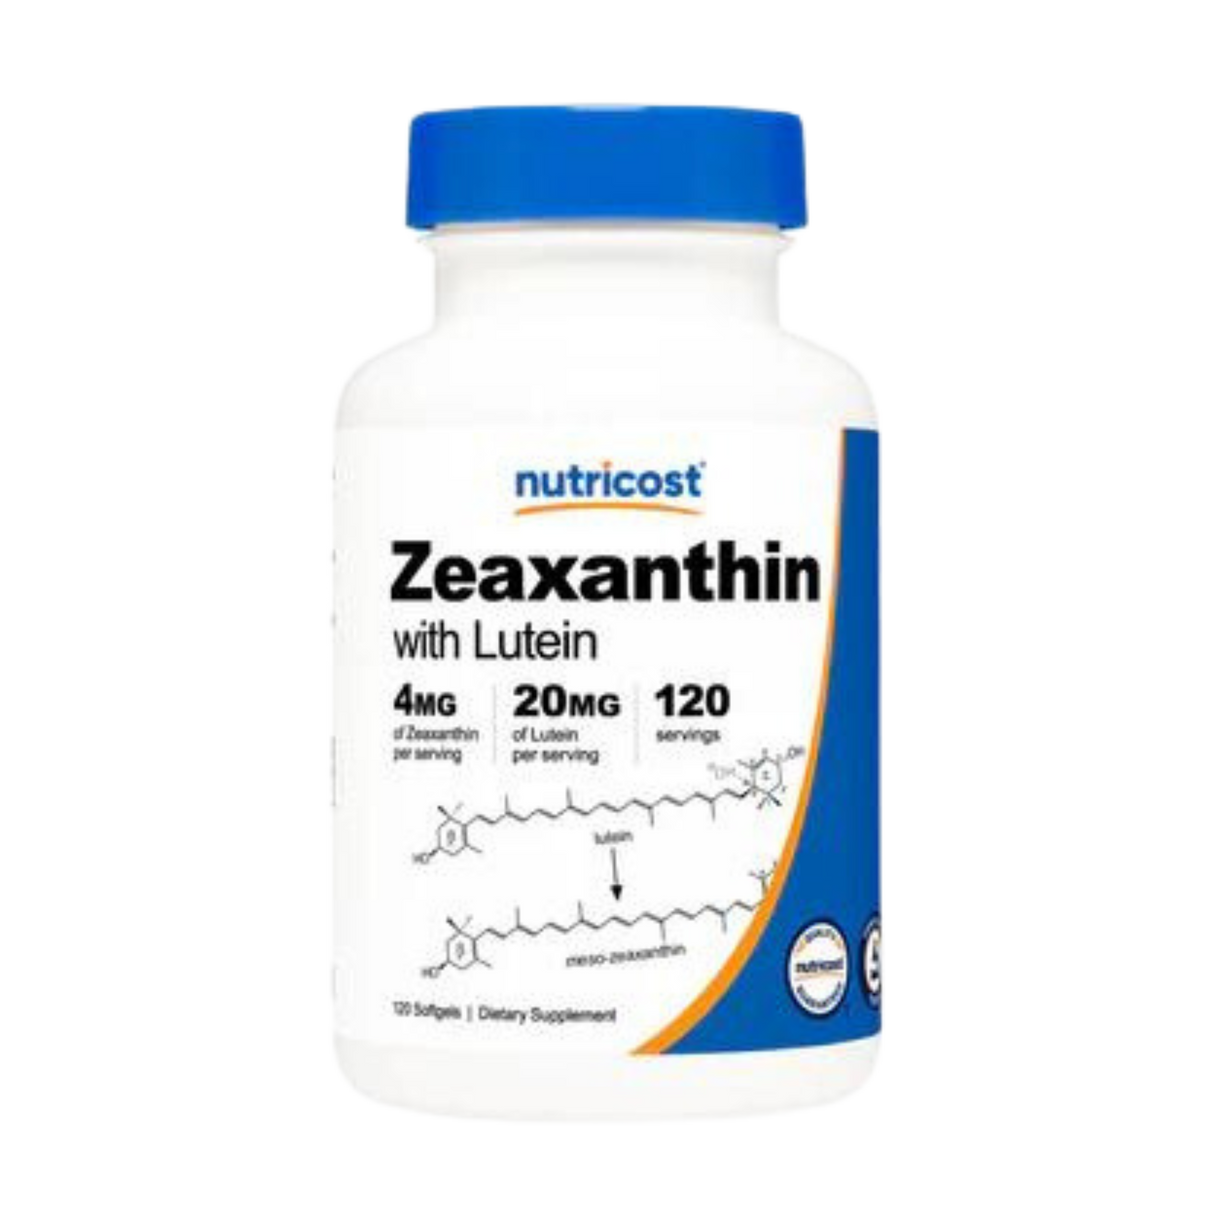 ZEAXANTHIN & LUTEIN - Kingpin Supplements 